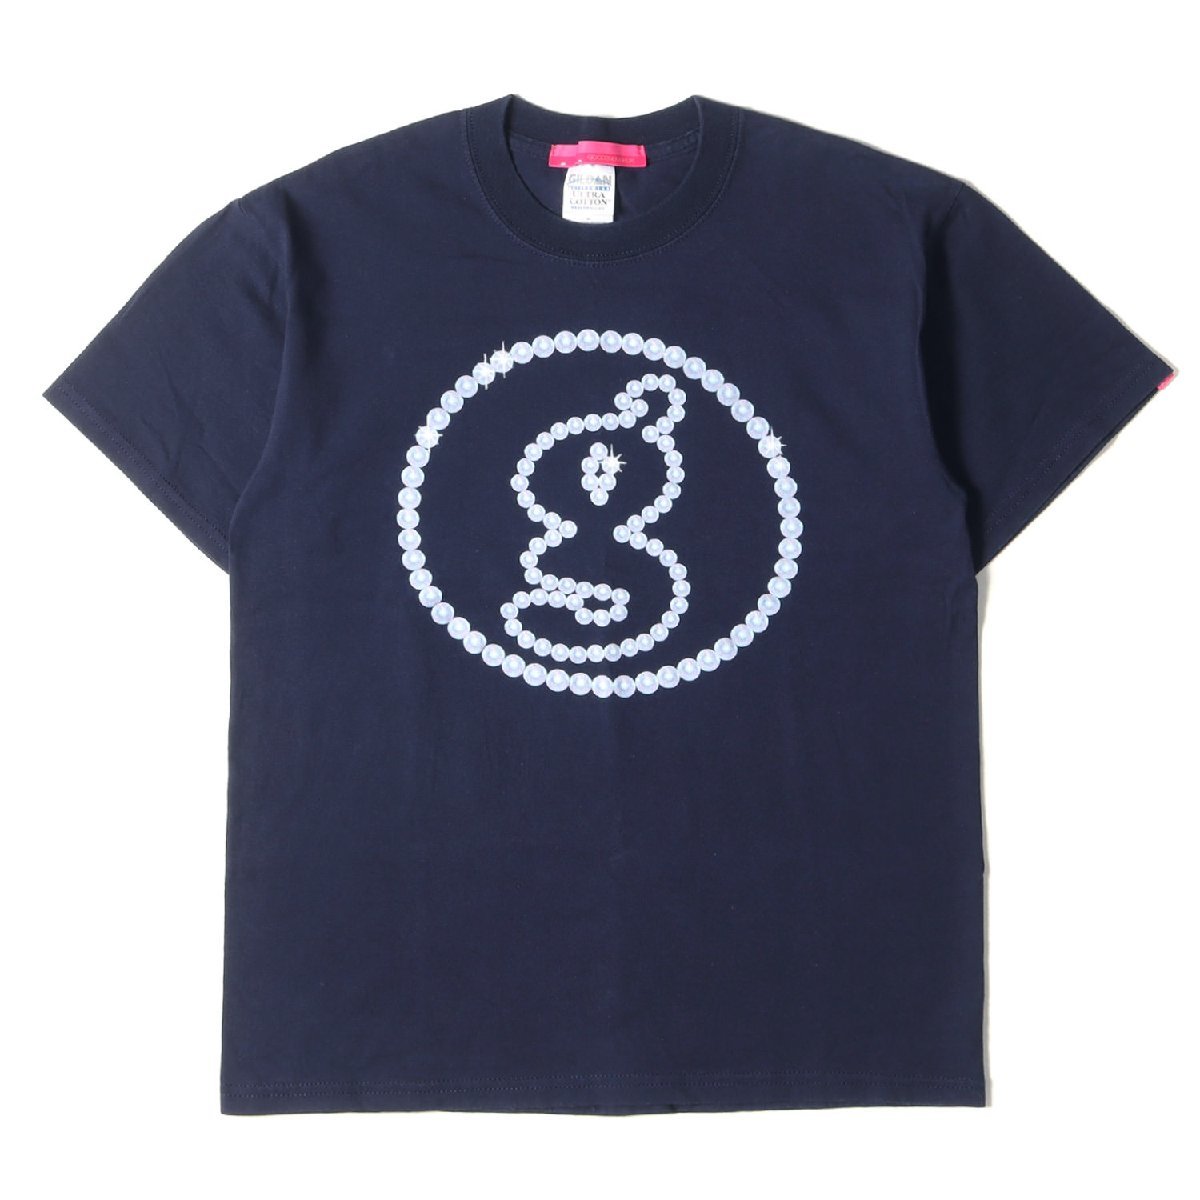 GOOD ENOUGH グッドイナフ Tシャツ サイズ:M 00s GOODENOUGH UK パール サークルg ロゴ クルーネック Tシャツ ネイビー 00年代 アーカイブ